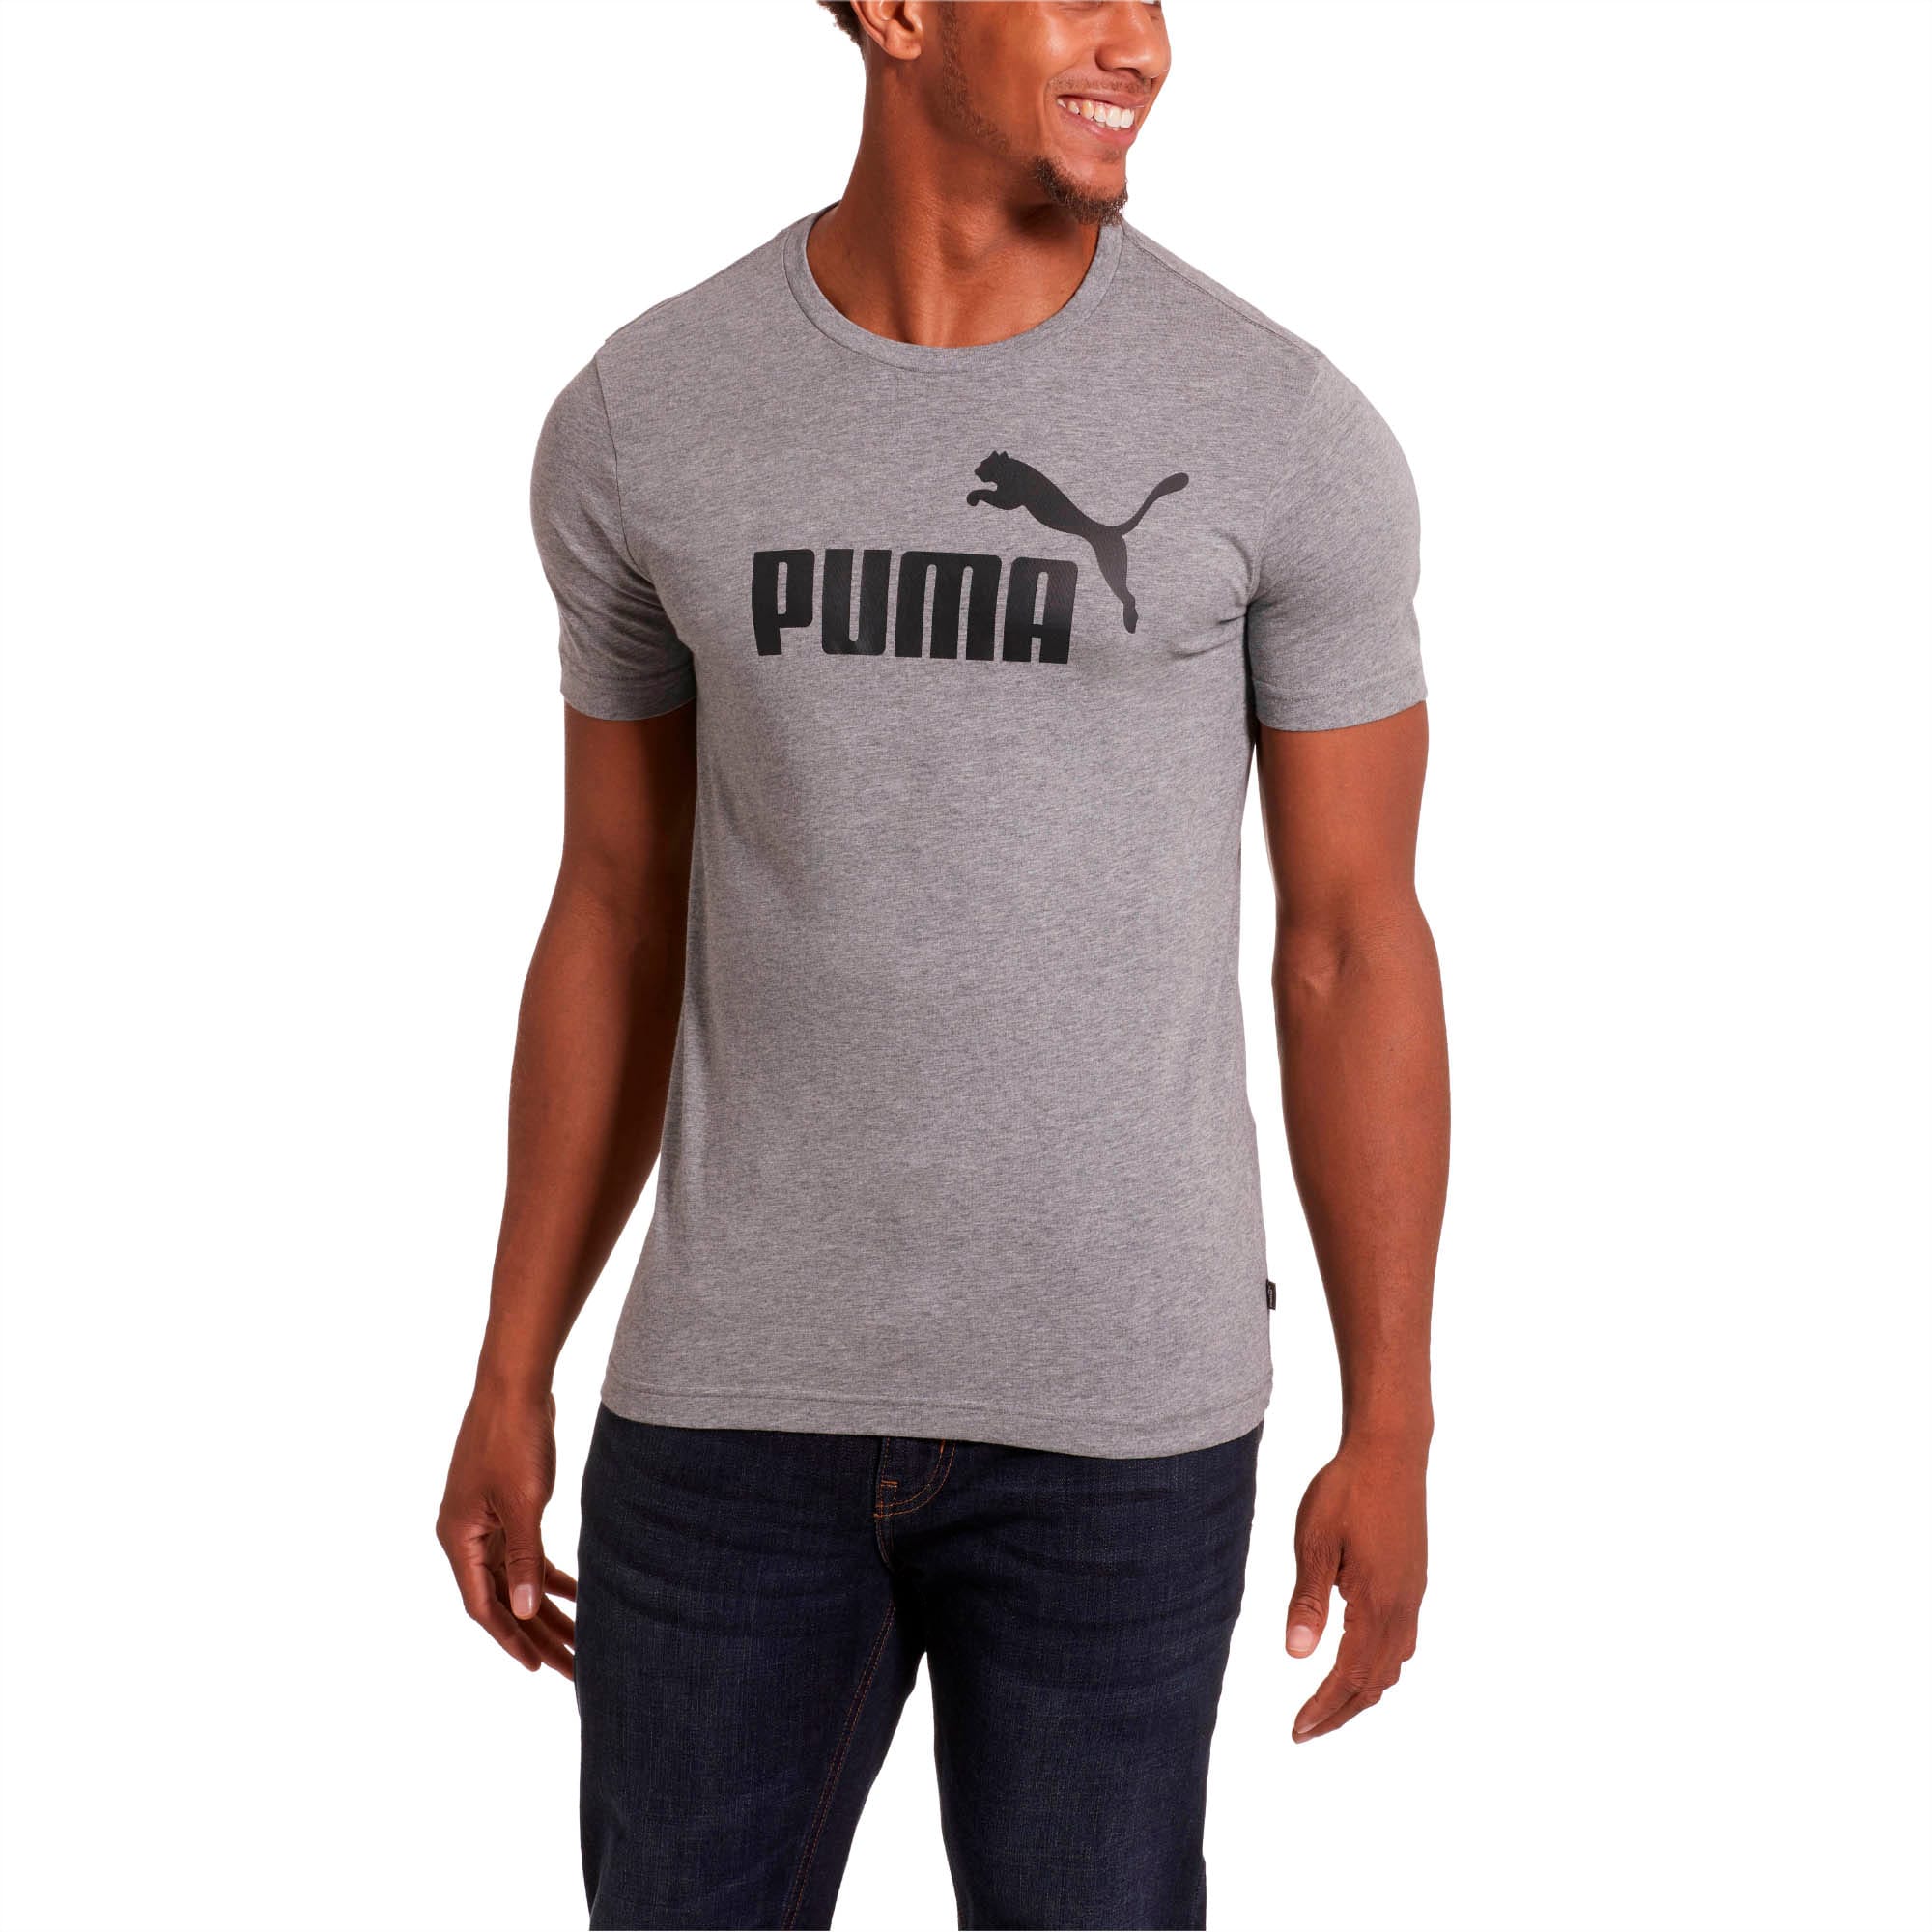 puma tshirt for men